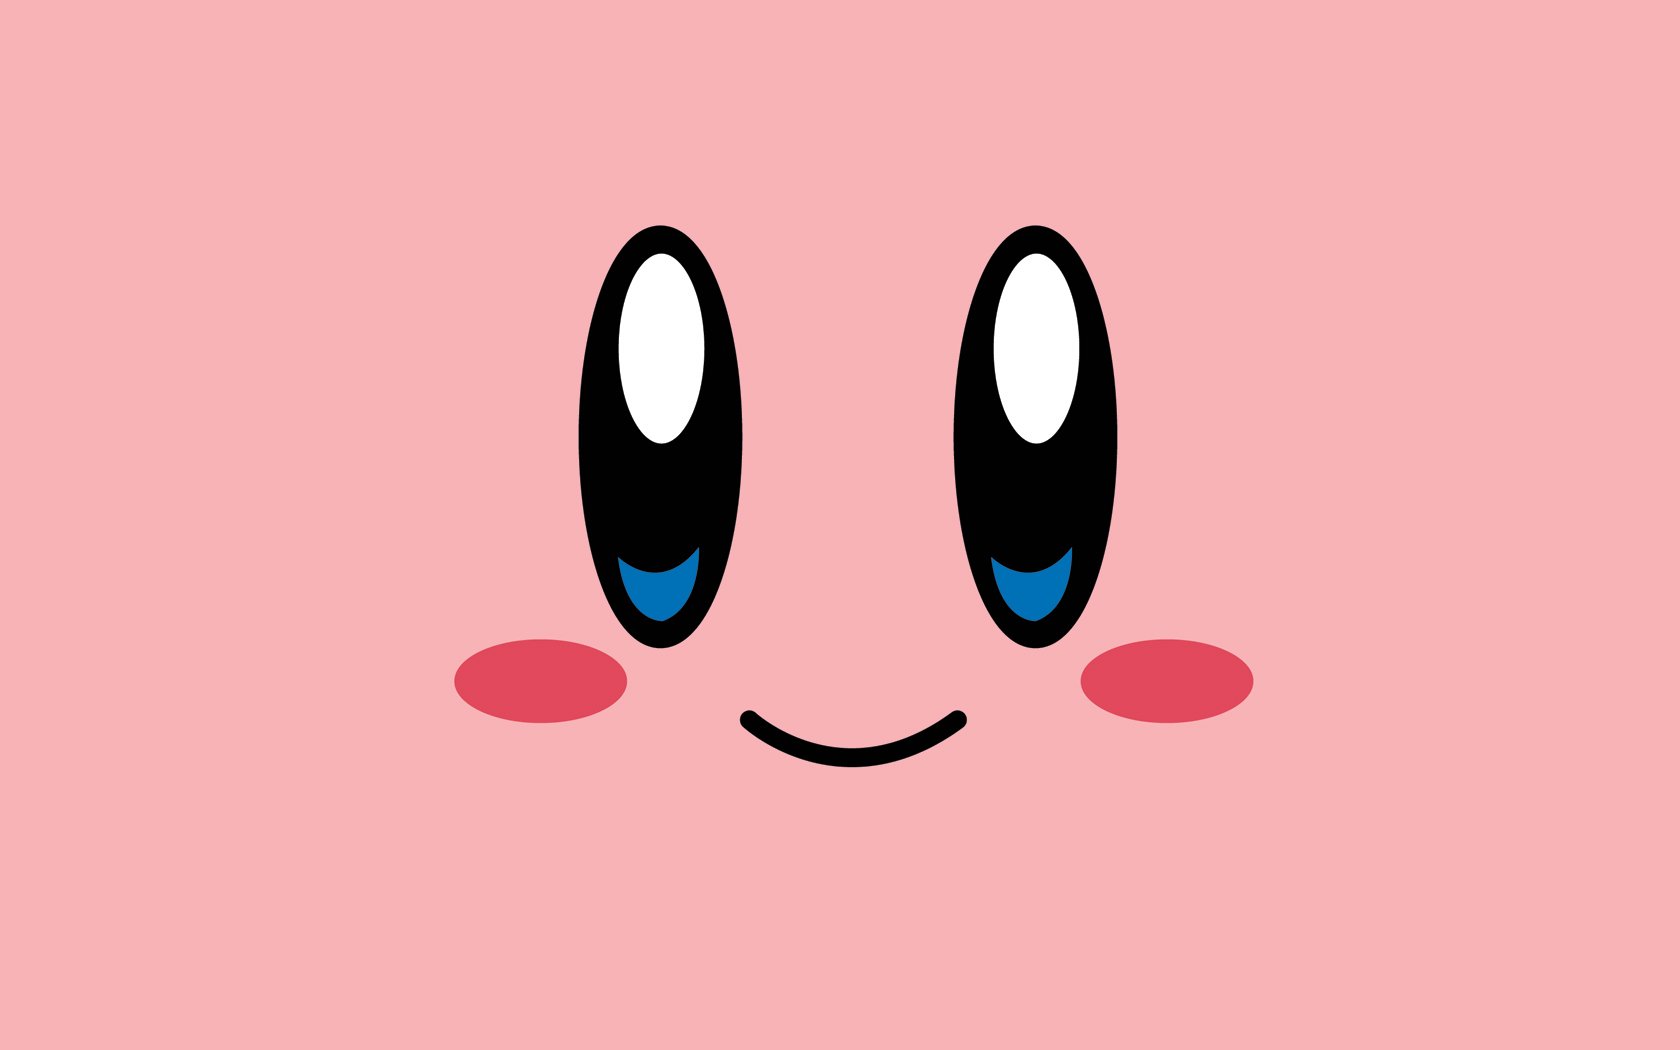 Xem hình nền Kirby HD sẽ khiến bạn nhớ đến những kỷ niệm đẹp với game này. Hình ảnh về nhân vật yêu thích Kirby sẽ khiến bạn thấy hứng thú và thúc đẩy đam mê cho trò chơi này.